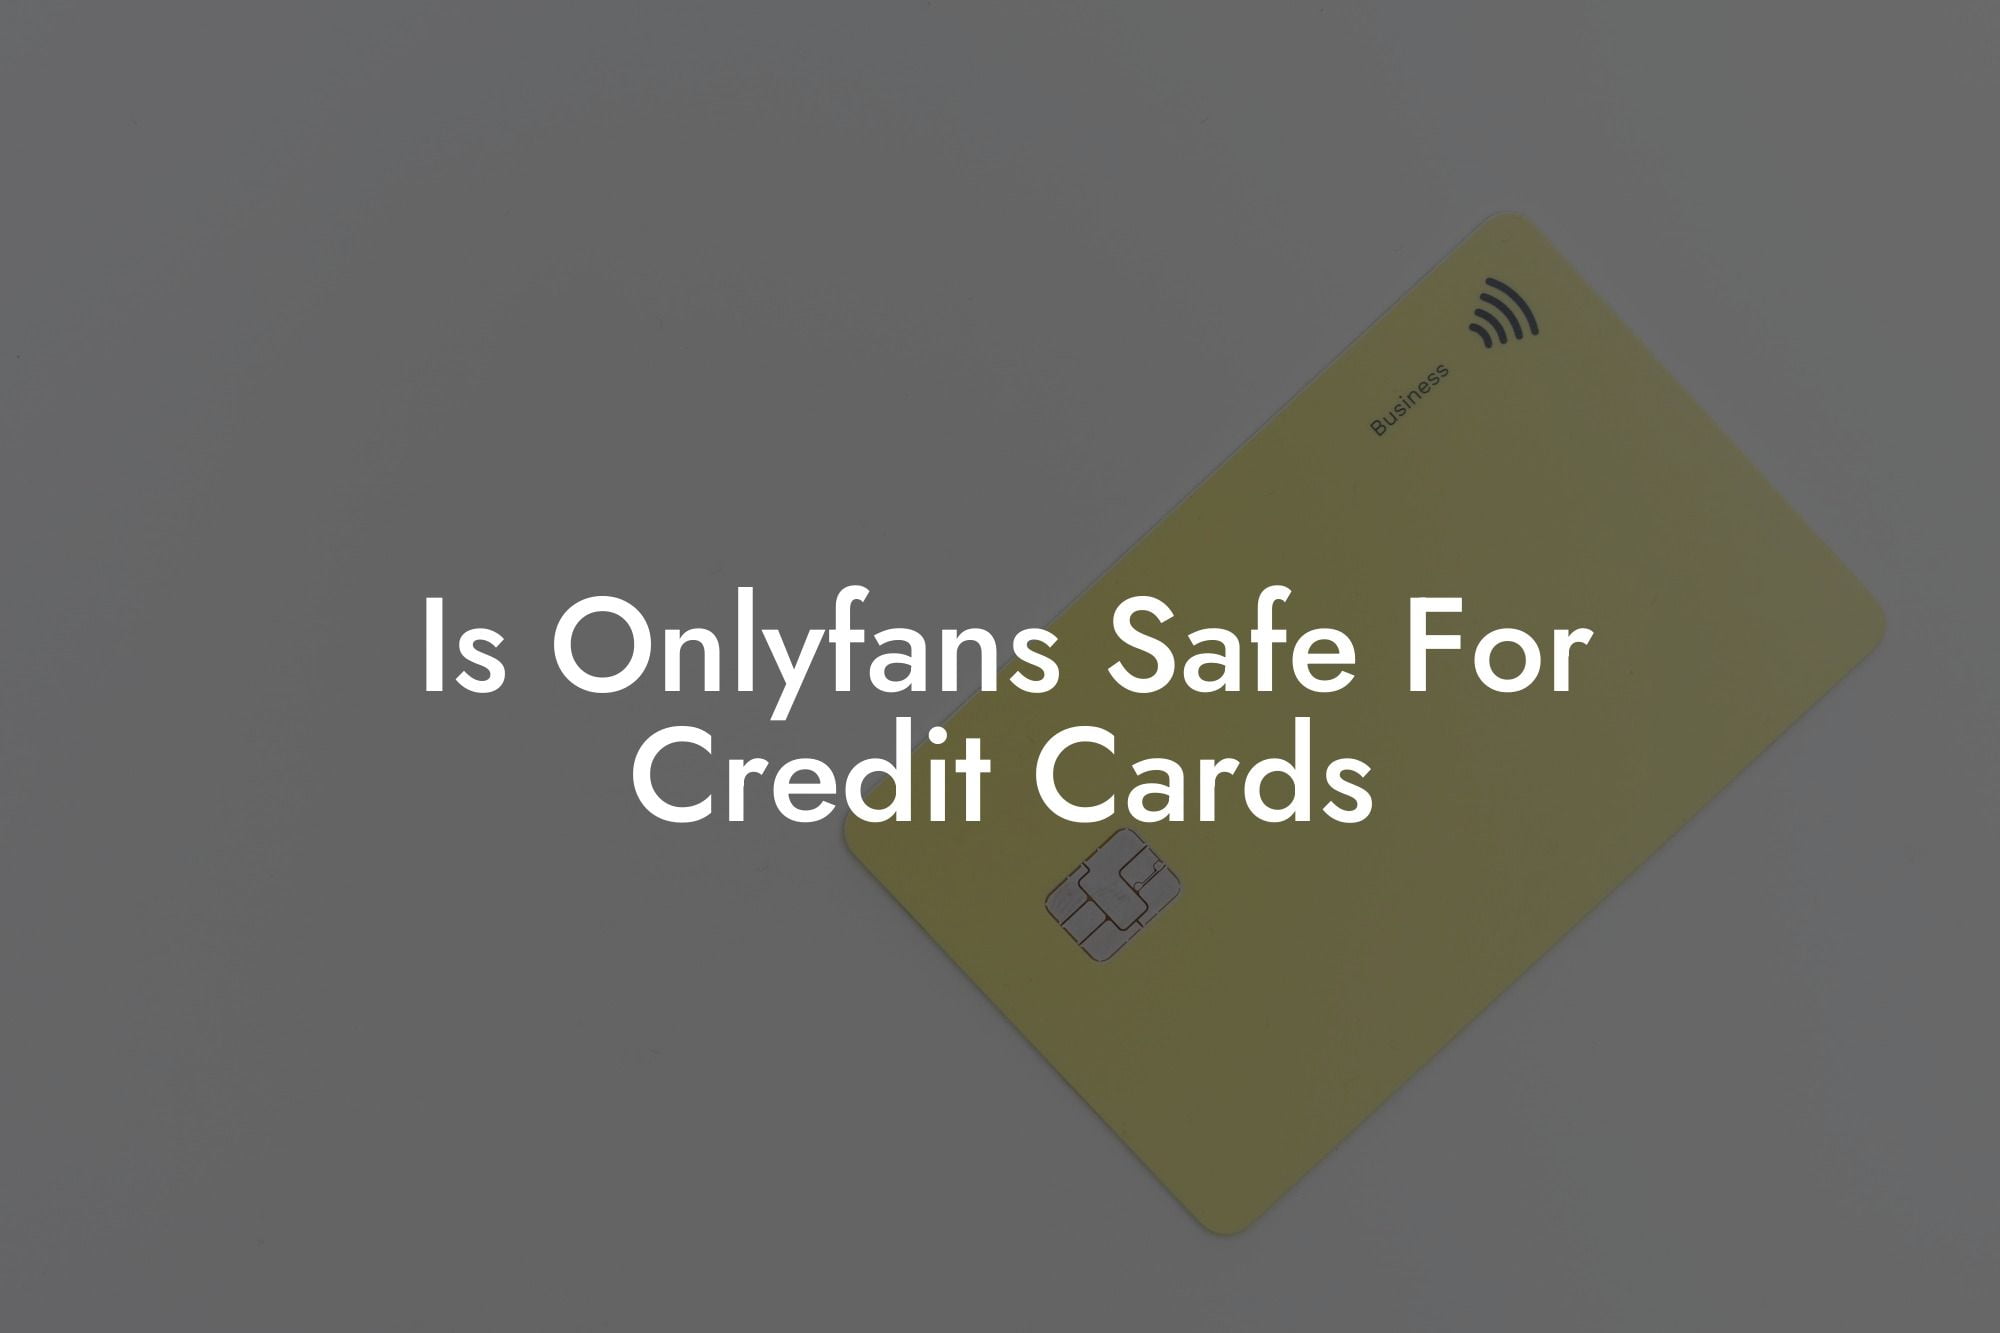 Is Onlyfans Safe For Credit Cards